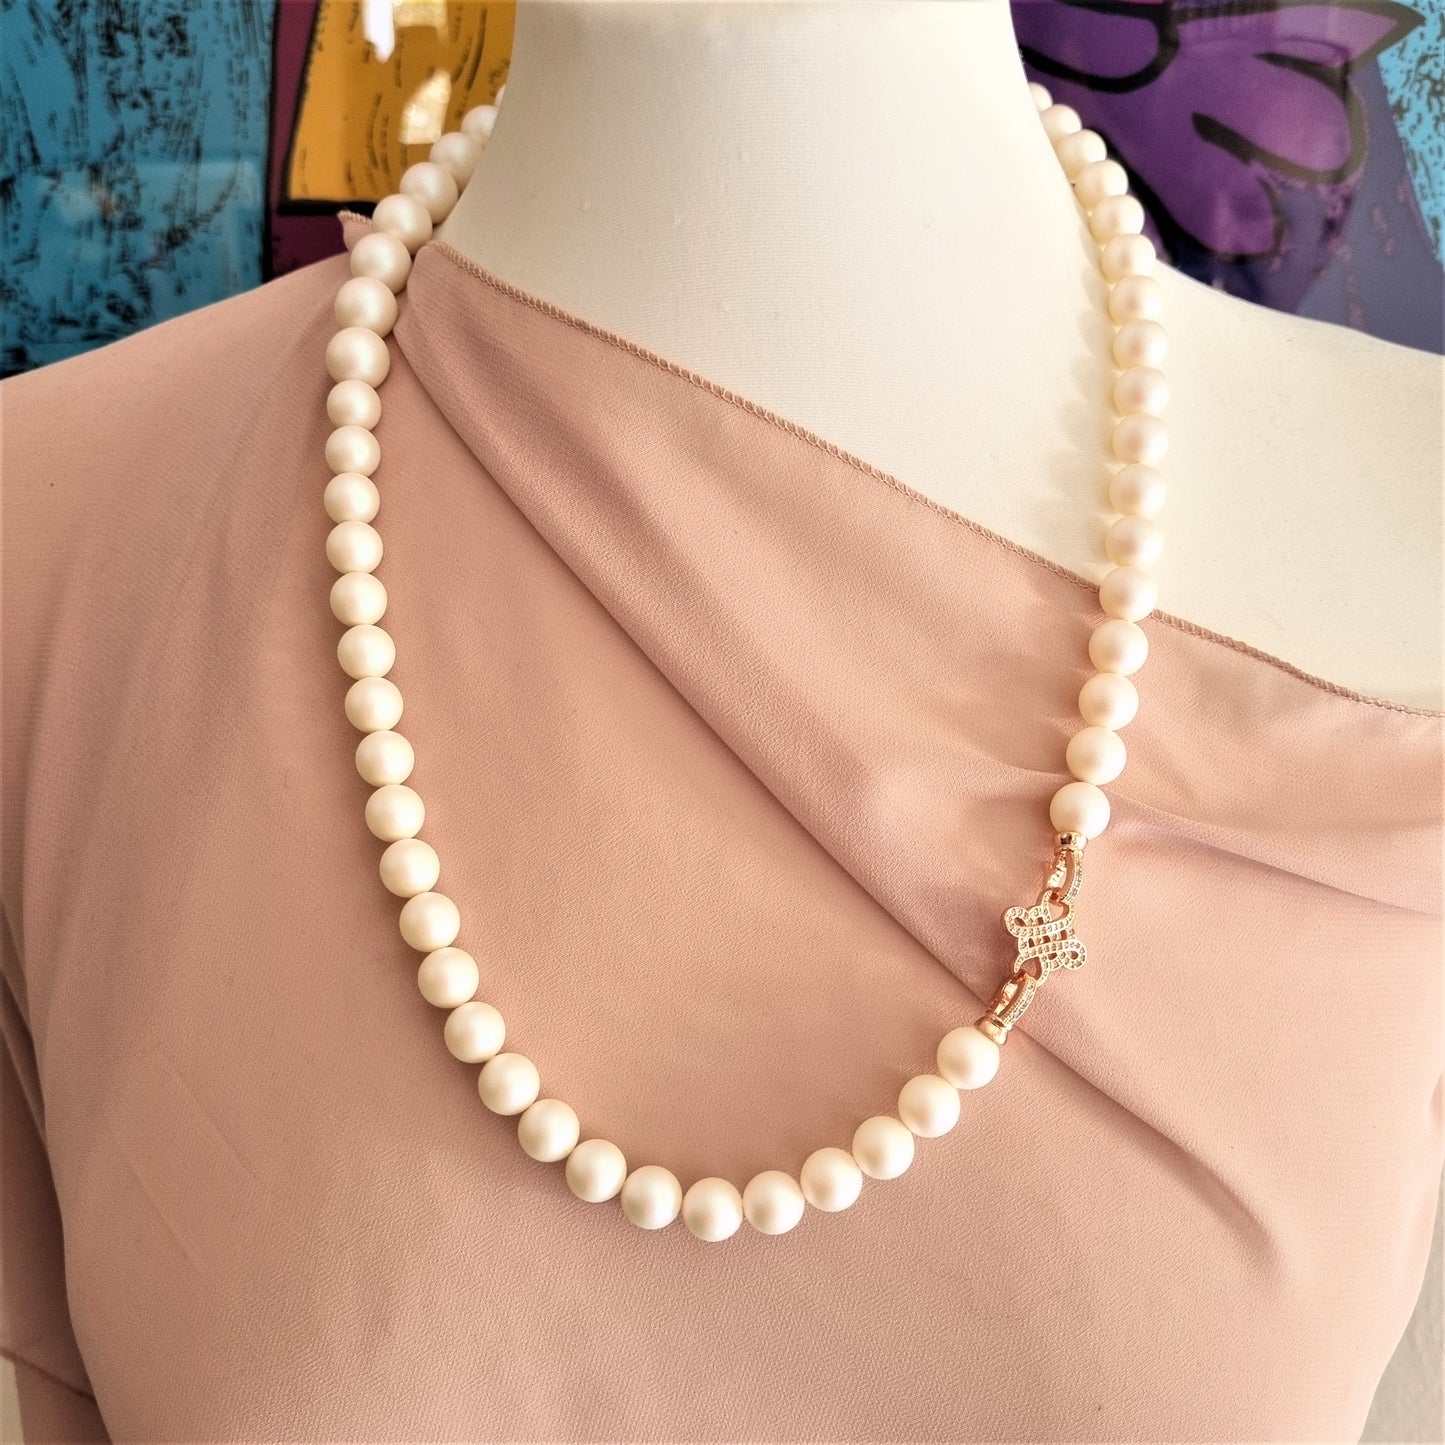 LUXURY Collana .005  perle swarovsky bianco perlato, chiusura metallo rosa e strass.